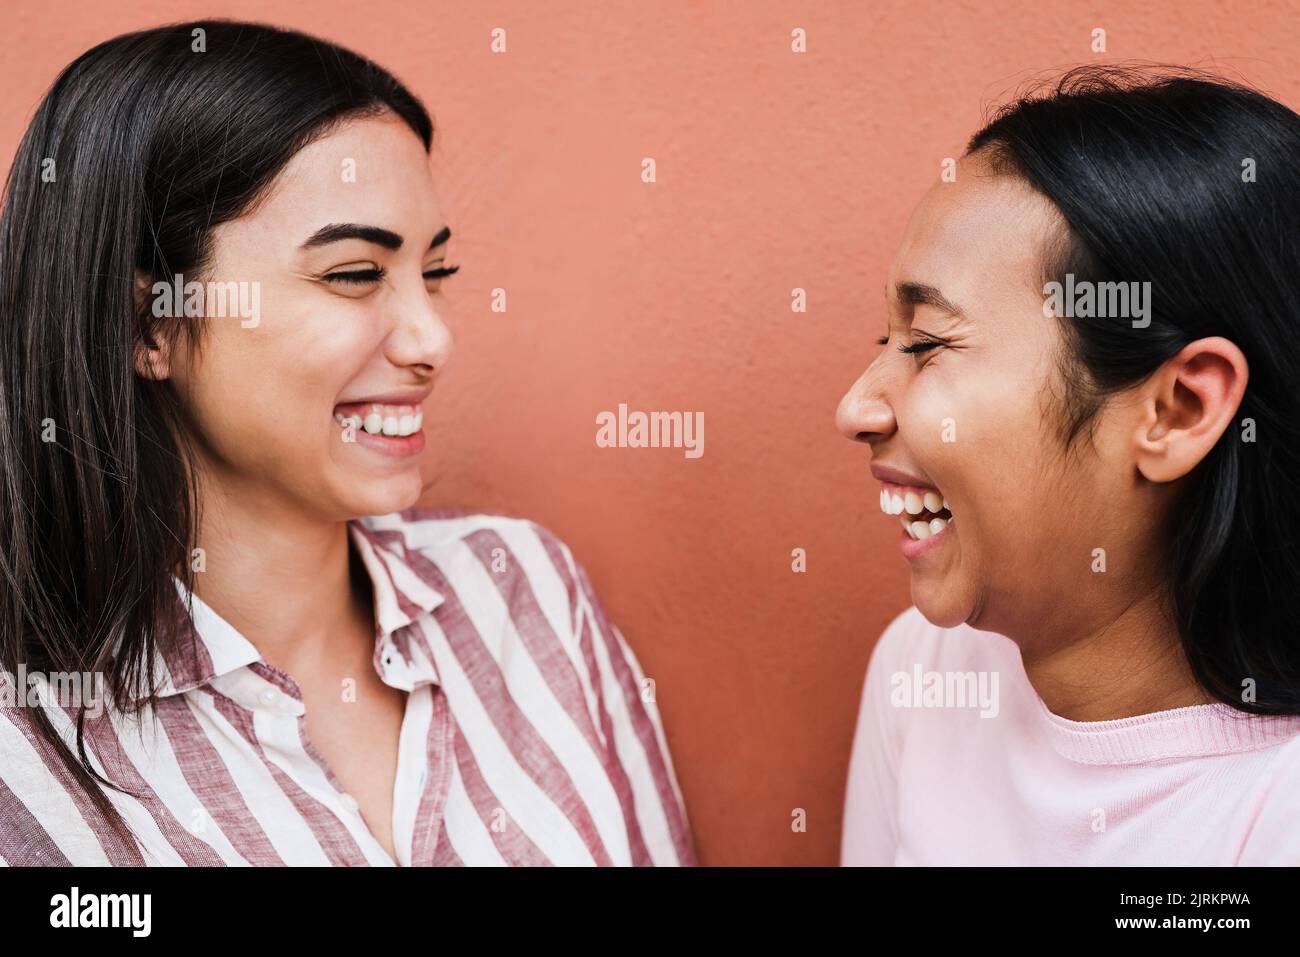 Hispanische Freunde, die Spaß haben, gemeinsam im Freien zu lachen - Fokus auf das rechte Mädchenauge Stockfoto